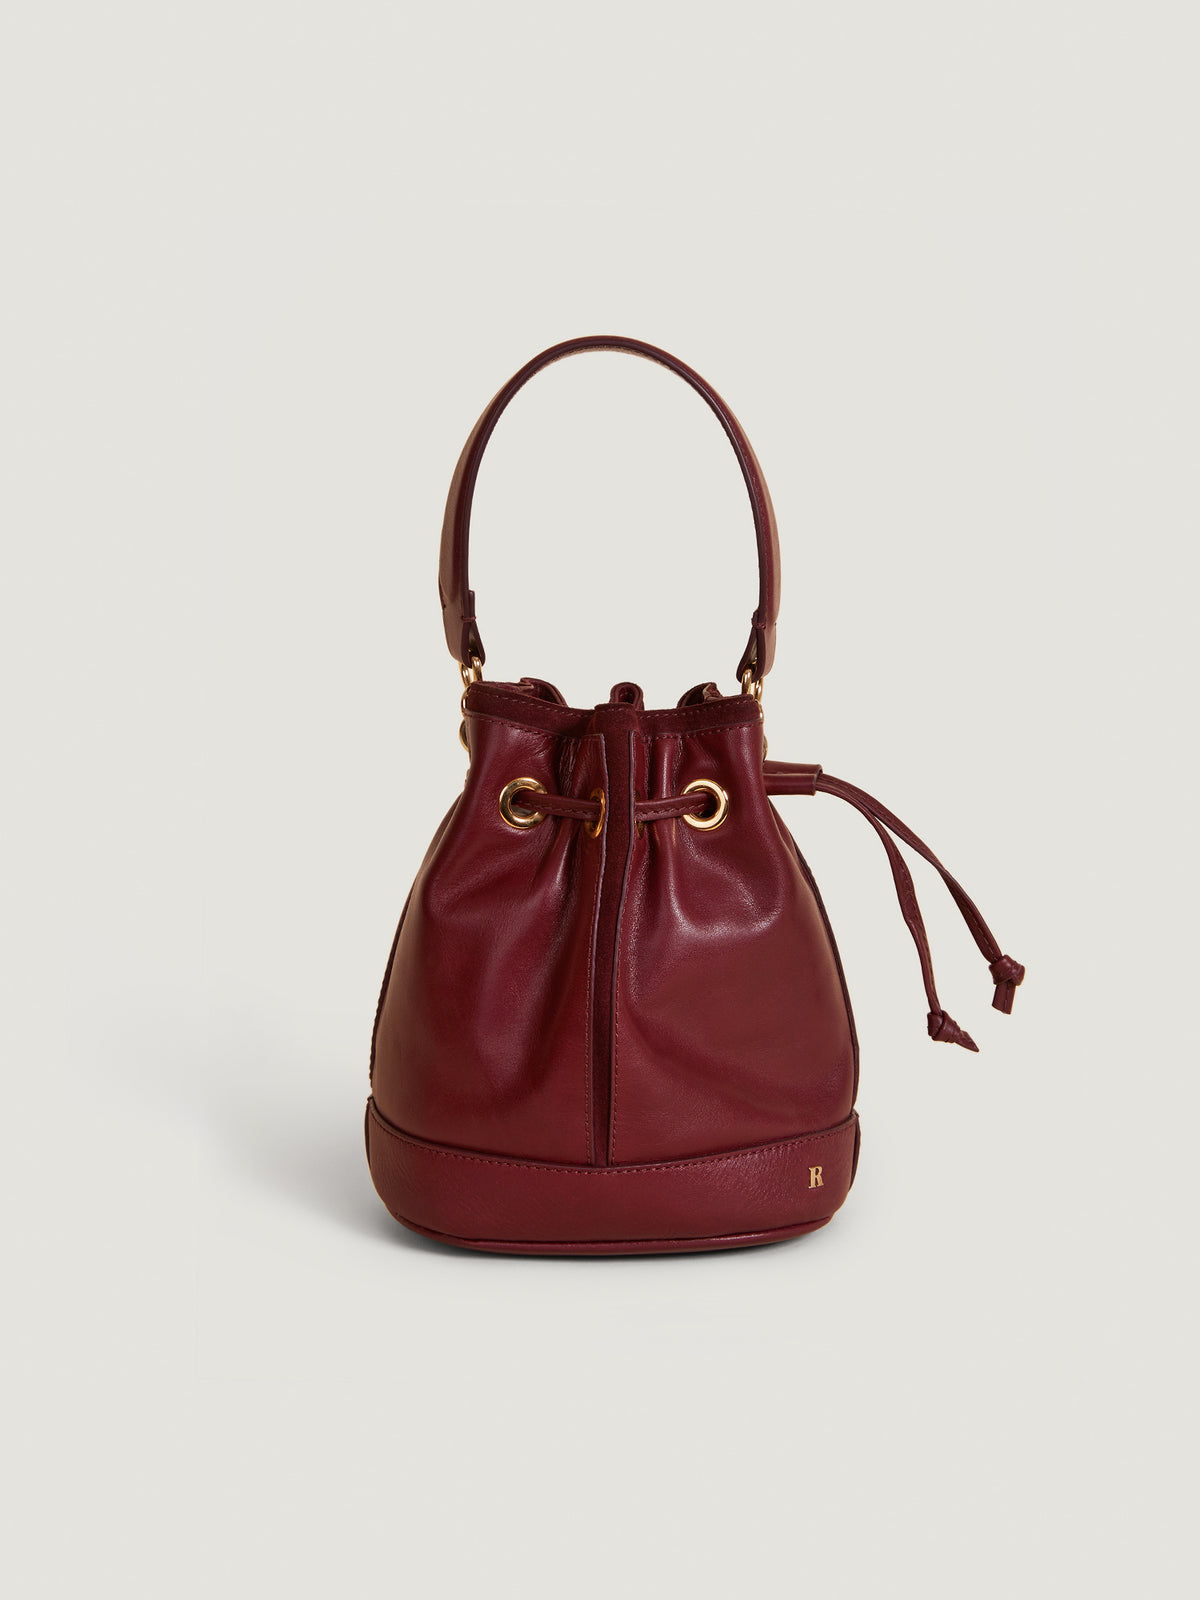 12 Leather Bucket Bags I'm Loving for Fall - Julia Berolzheimer